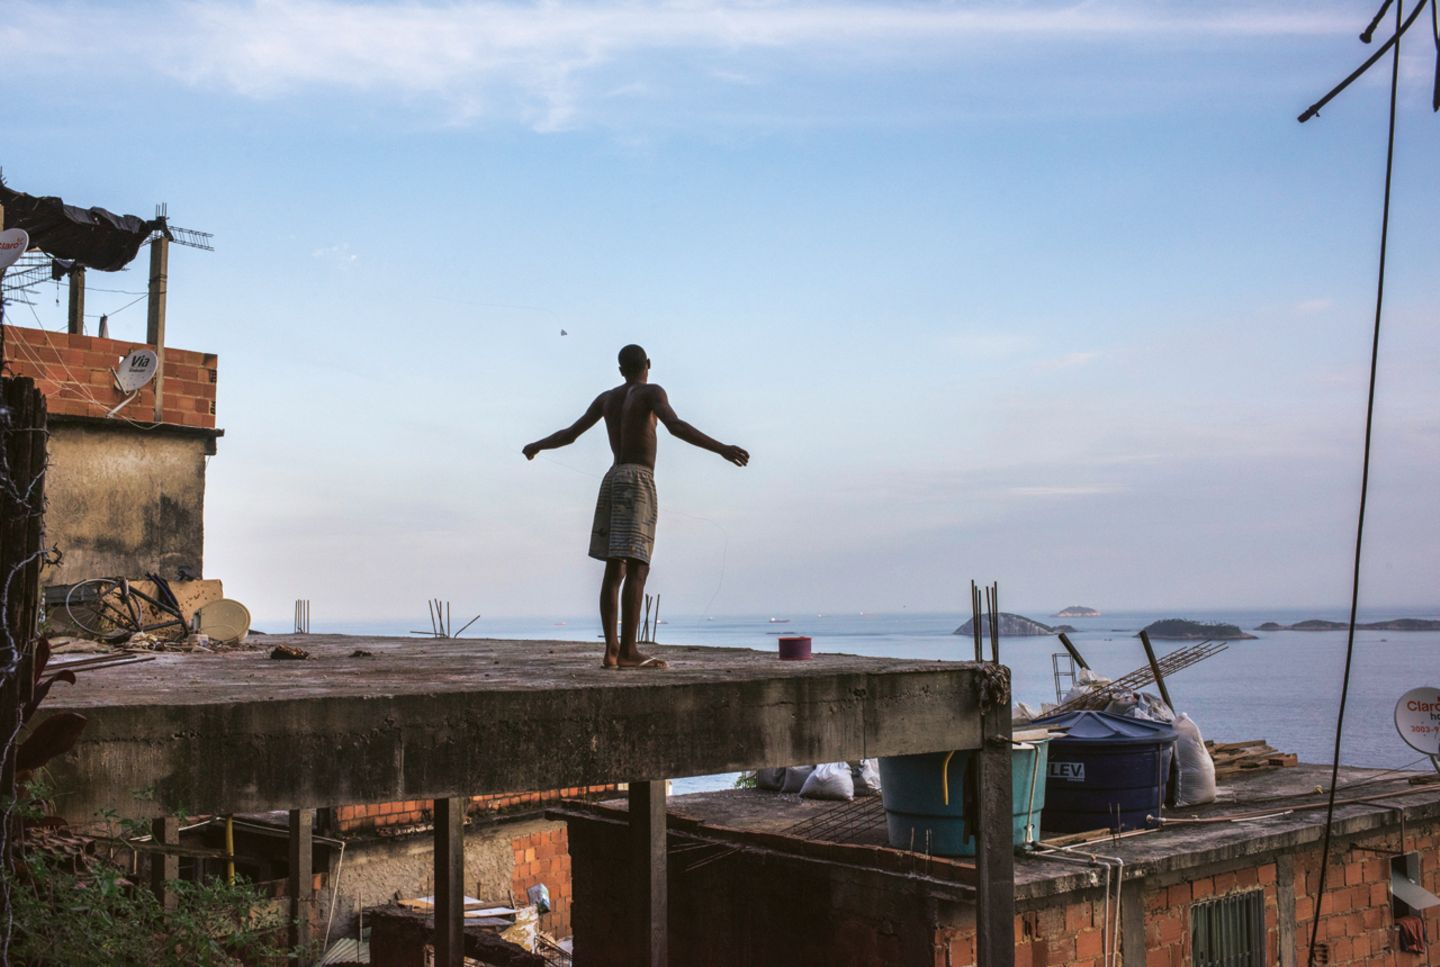 Brasilien: Der Himmel über den Favelas gehört den Drachen, und um die Vorherrschaft wird hart gerungen: Kinder und Jugendliche versuchen, die Schnüre der jeweils anderen zu durchtrennen und damit einen Absturz zu provozieren